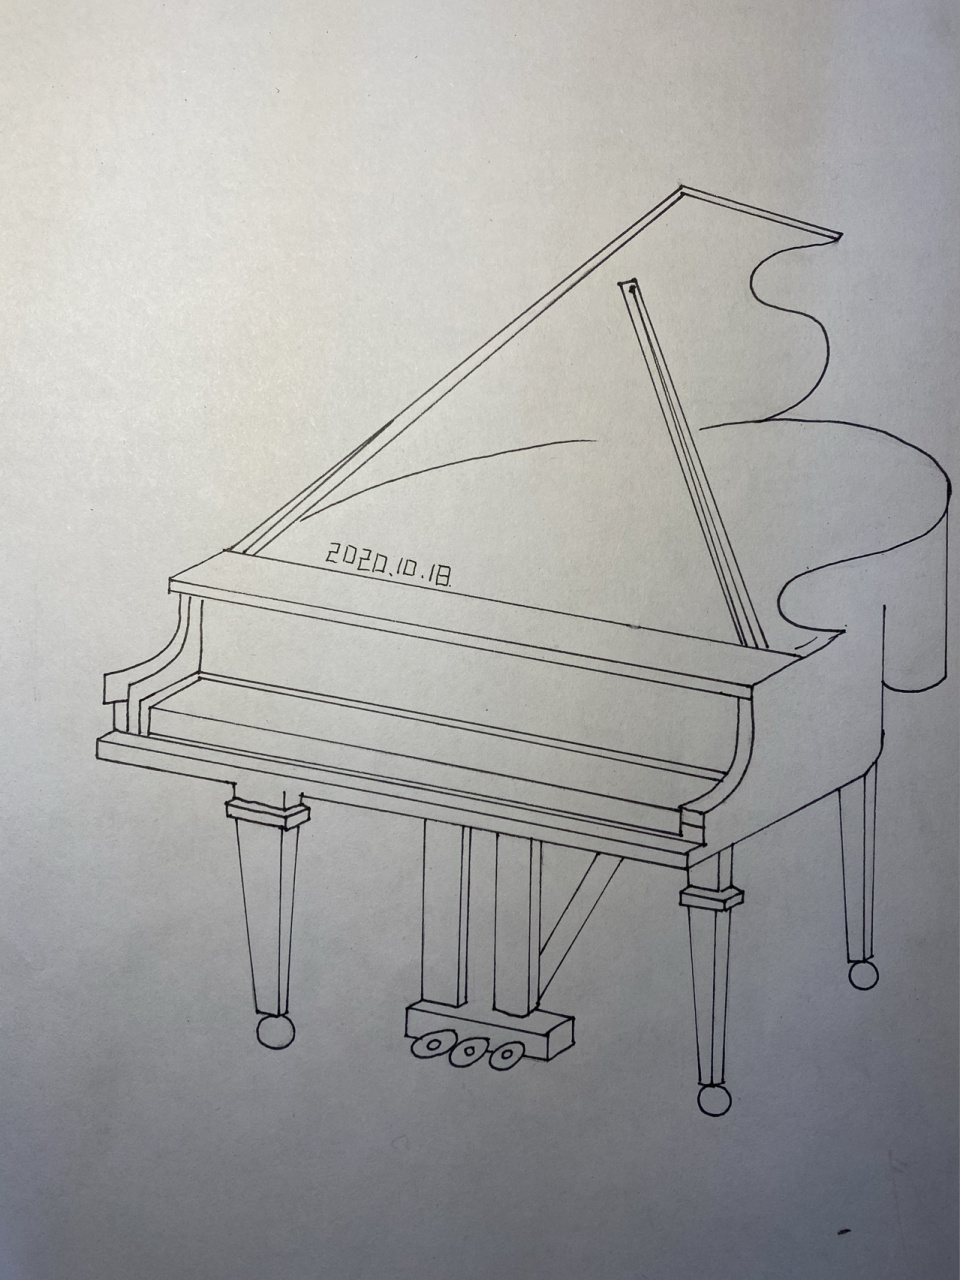 钢琴简笔画简单图片